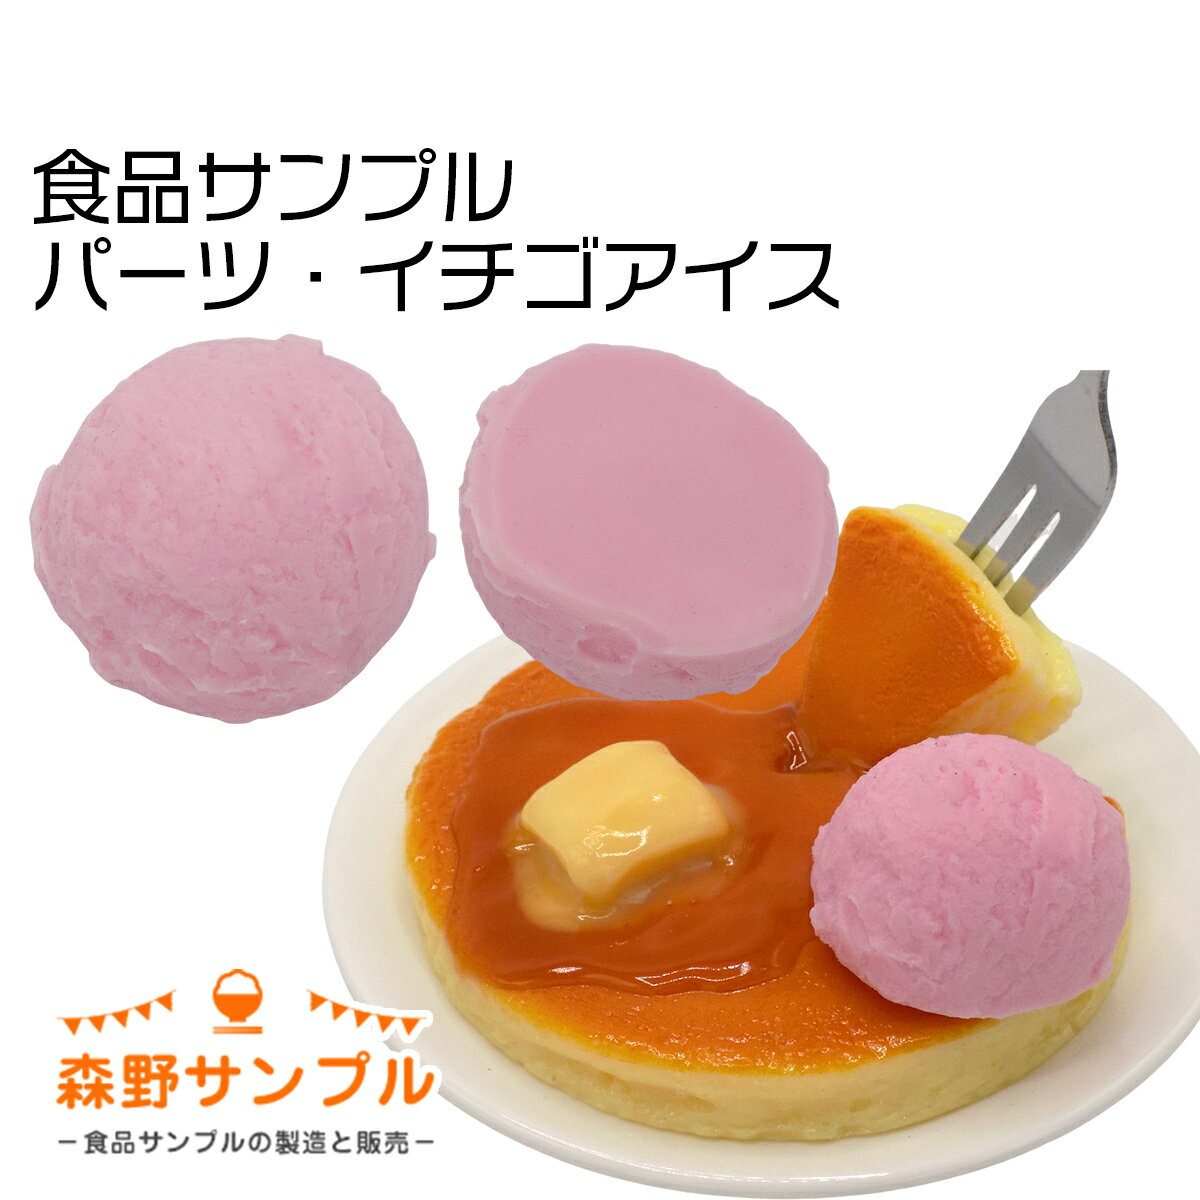 【 パーツ イチゴアイス ♯20 】食品サンプル 手作りキッ